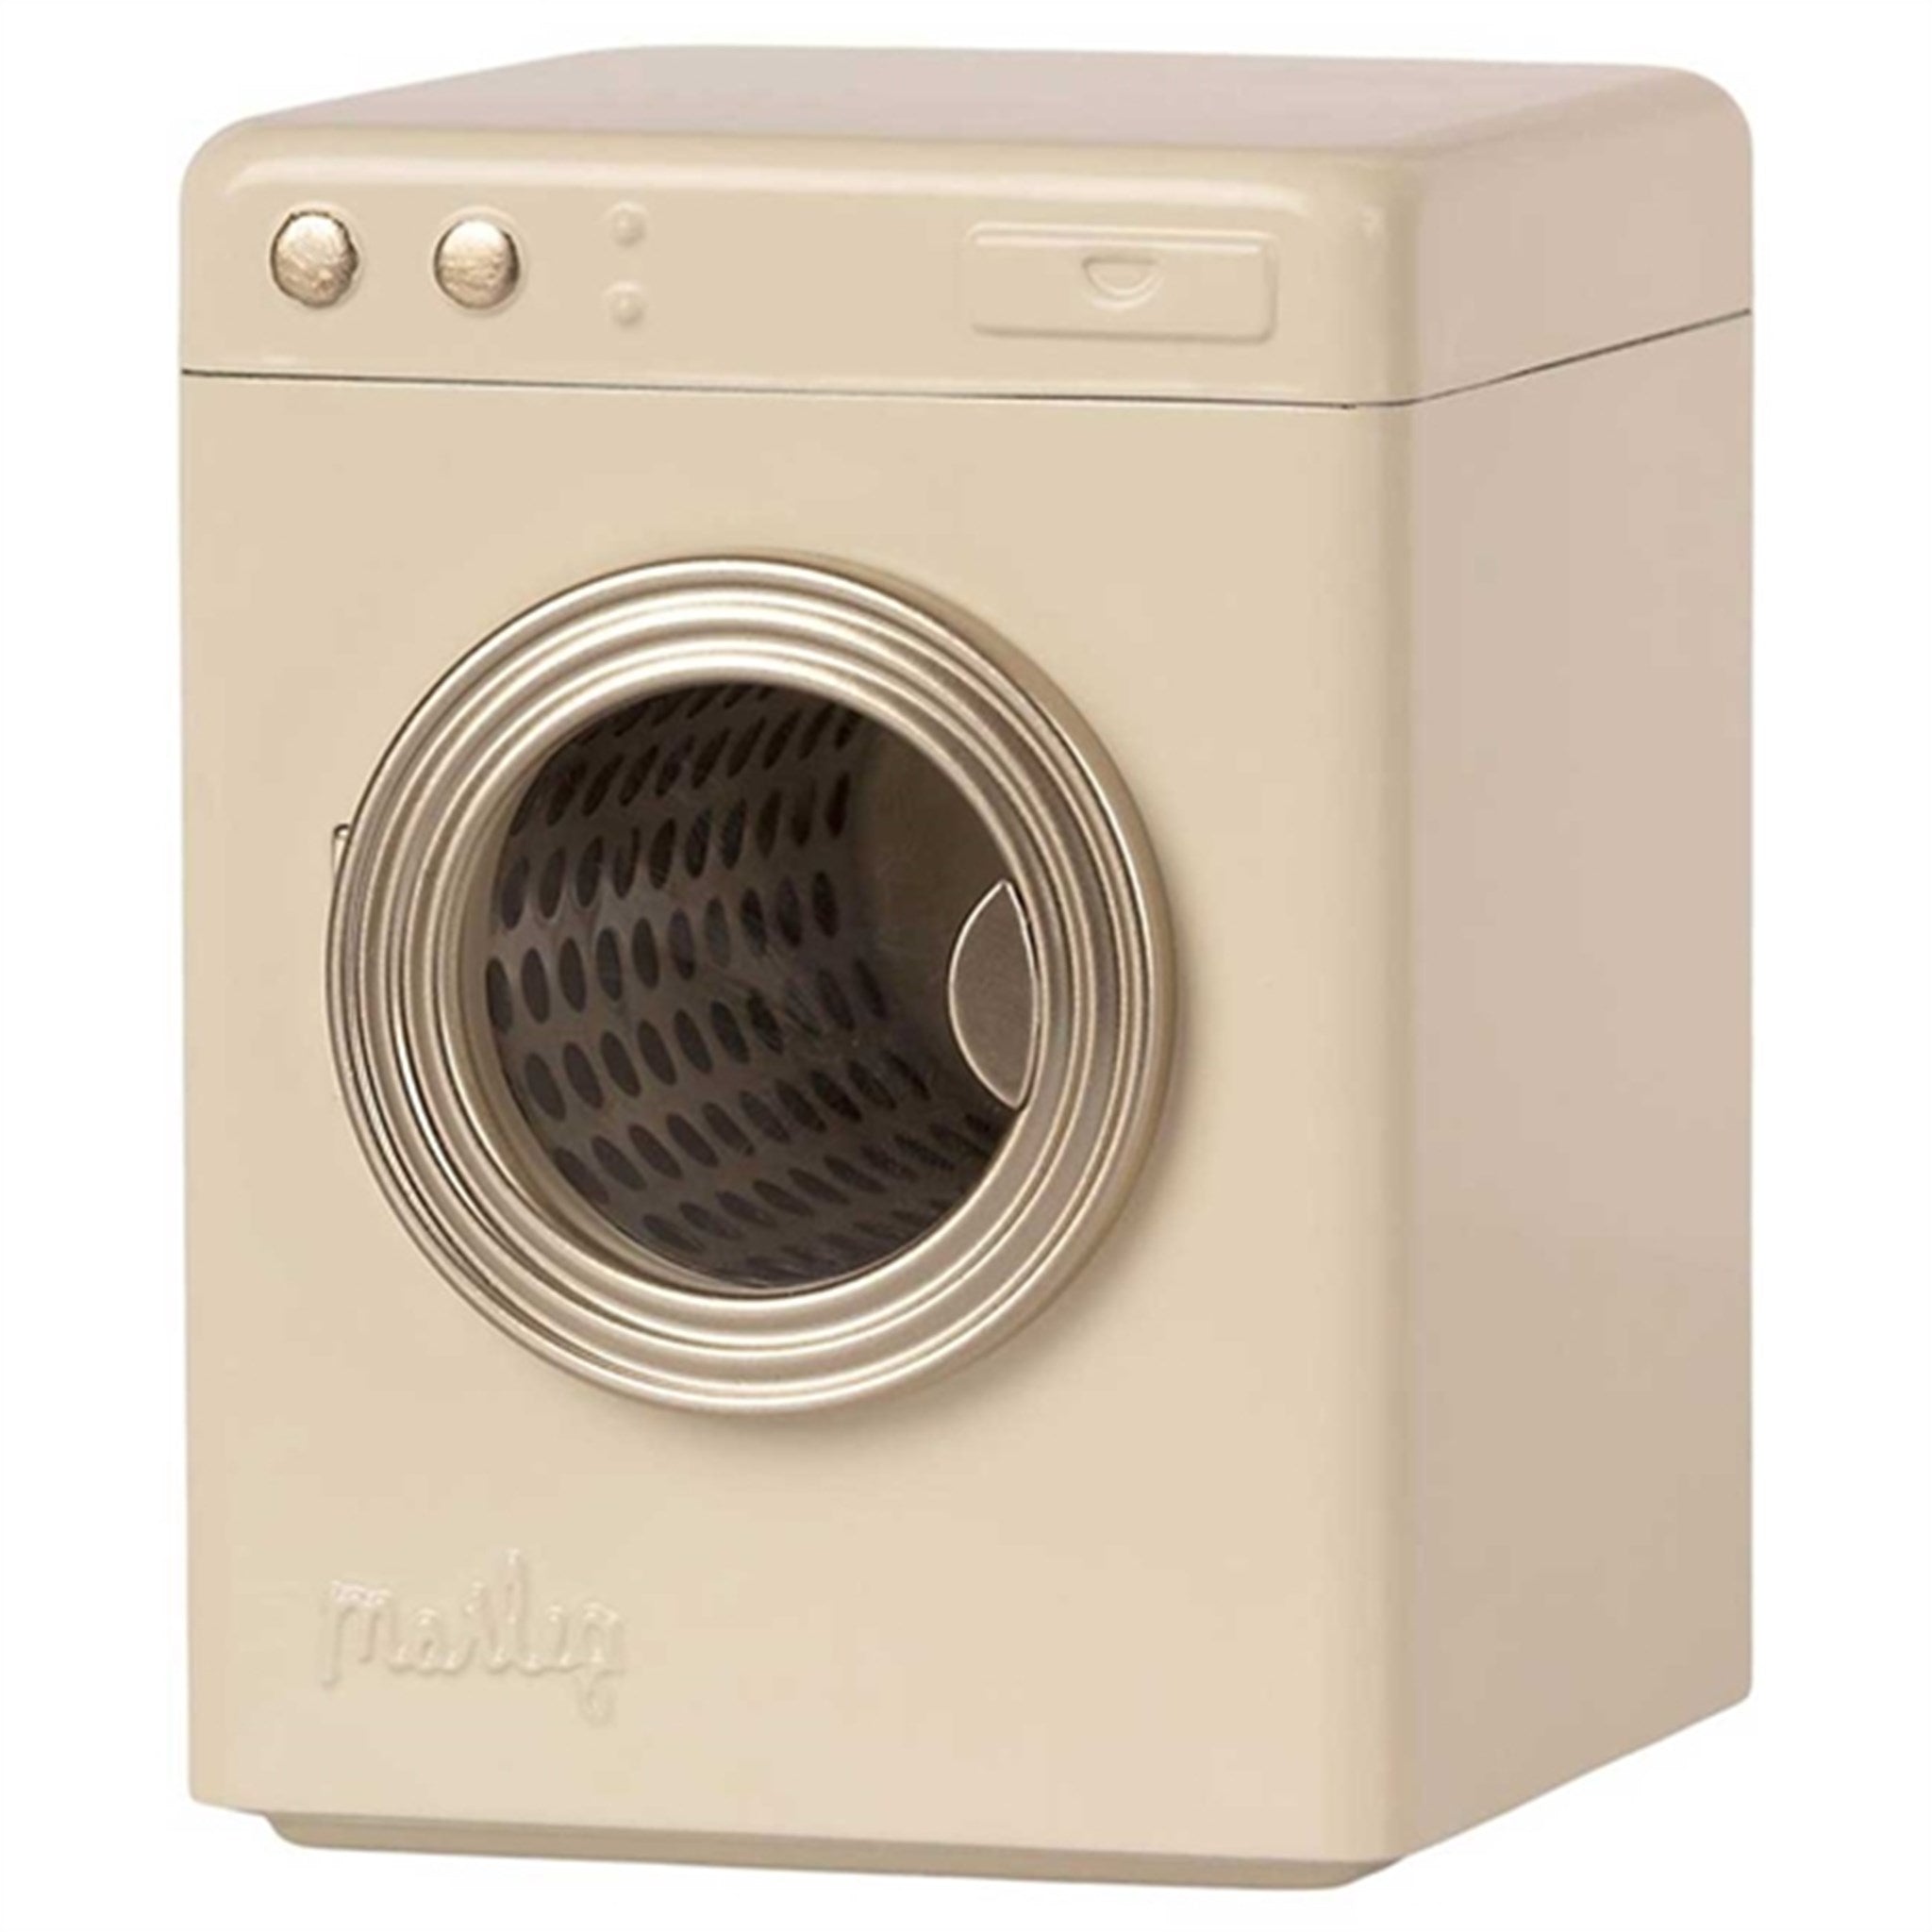 Maileg Washing Machine Offwhite 3